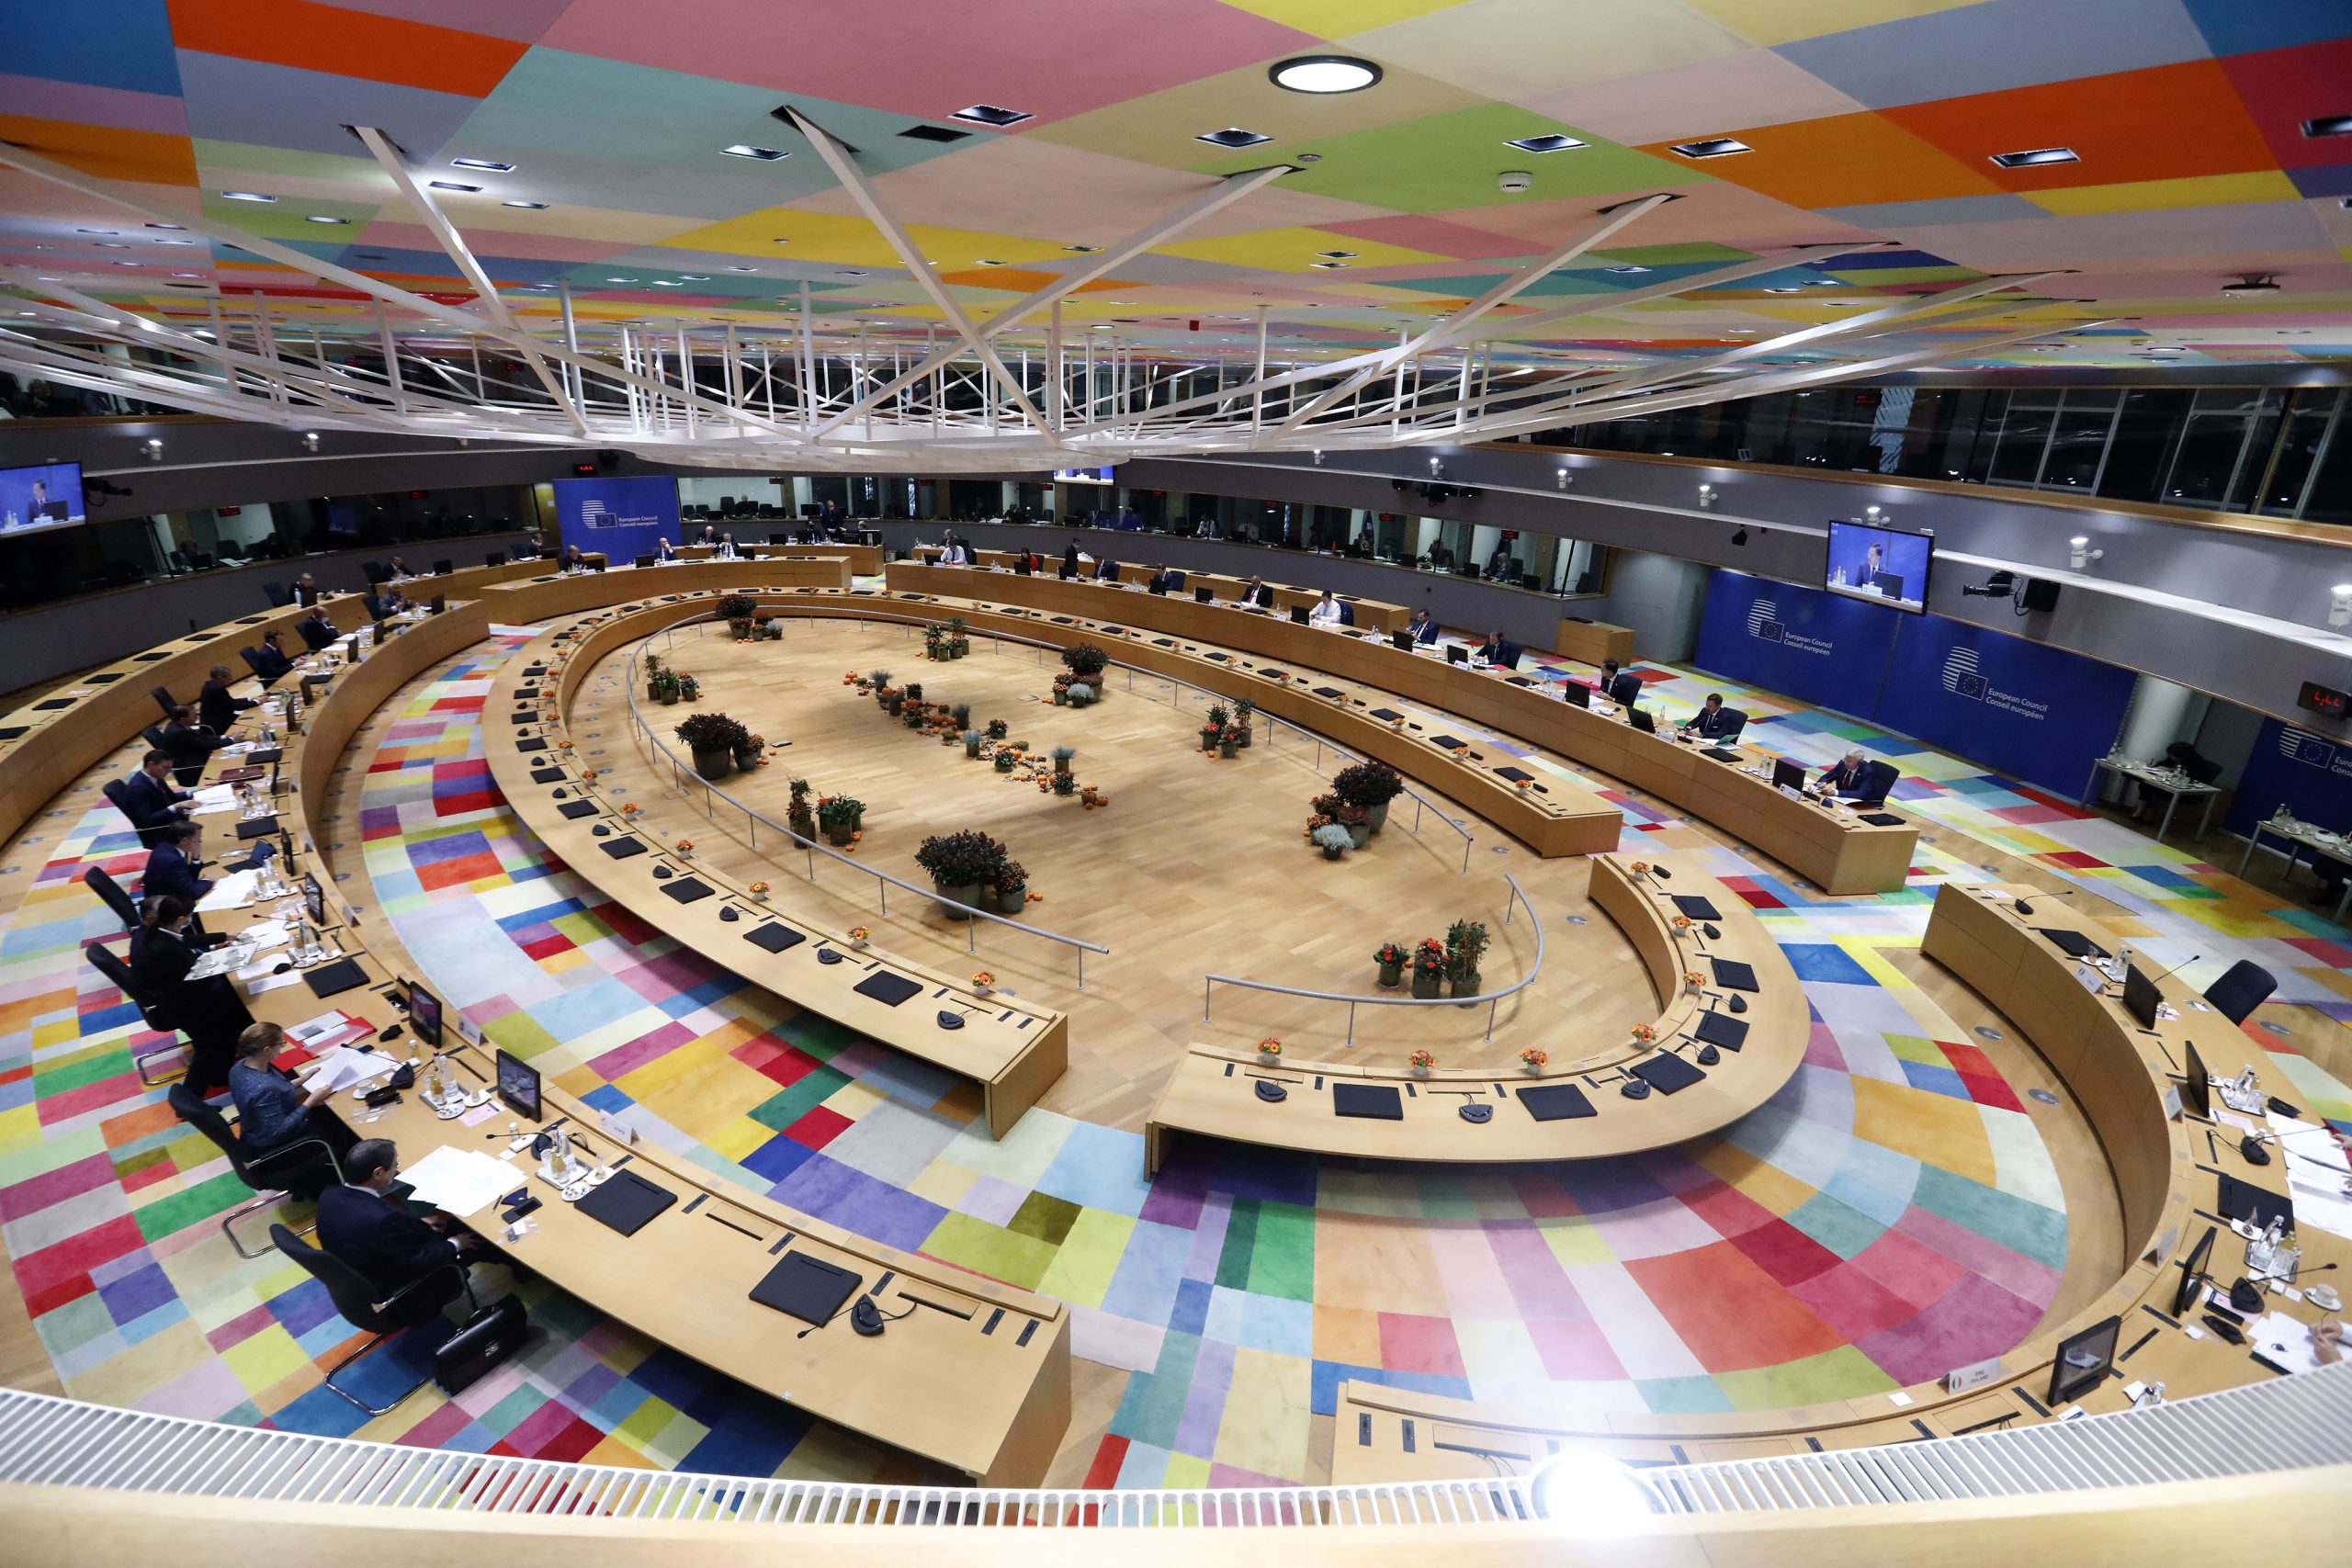 Zdjęcie przedstawia z góry widok na salę plenarną gdzie odbywają się spotkania Rady Europejskiej.